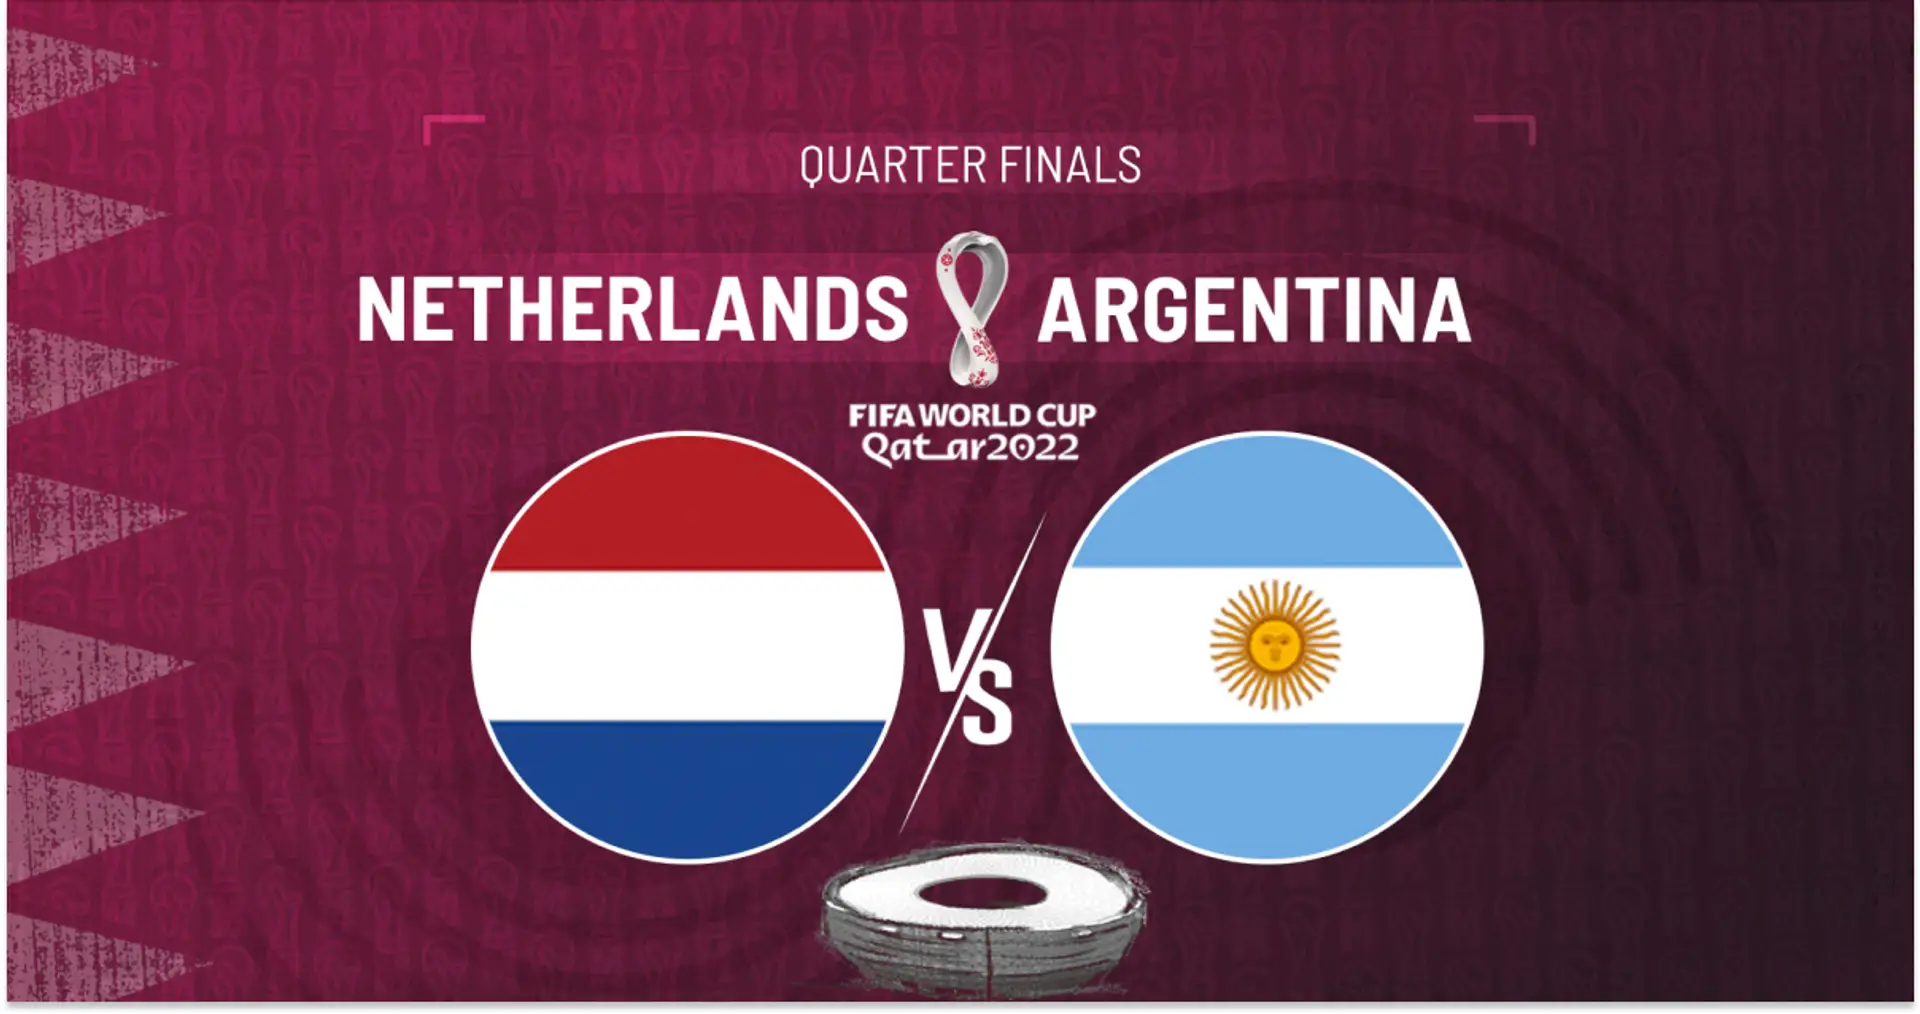 Olanda vs Argentina: le formazioni ufficiali delle squadre per la partita della Coppa del Mondo Qatar 2022 